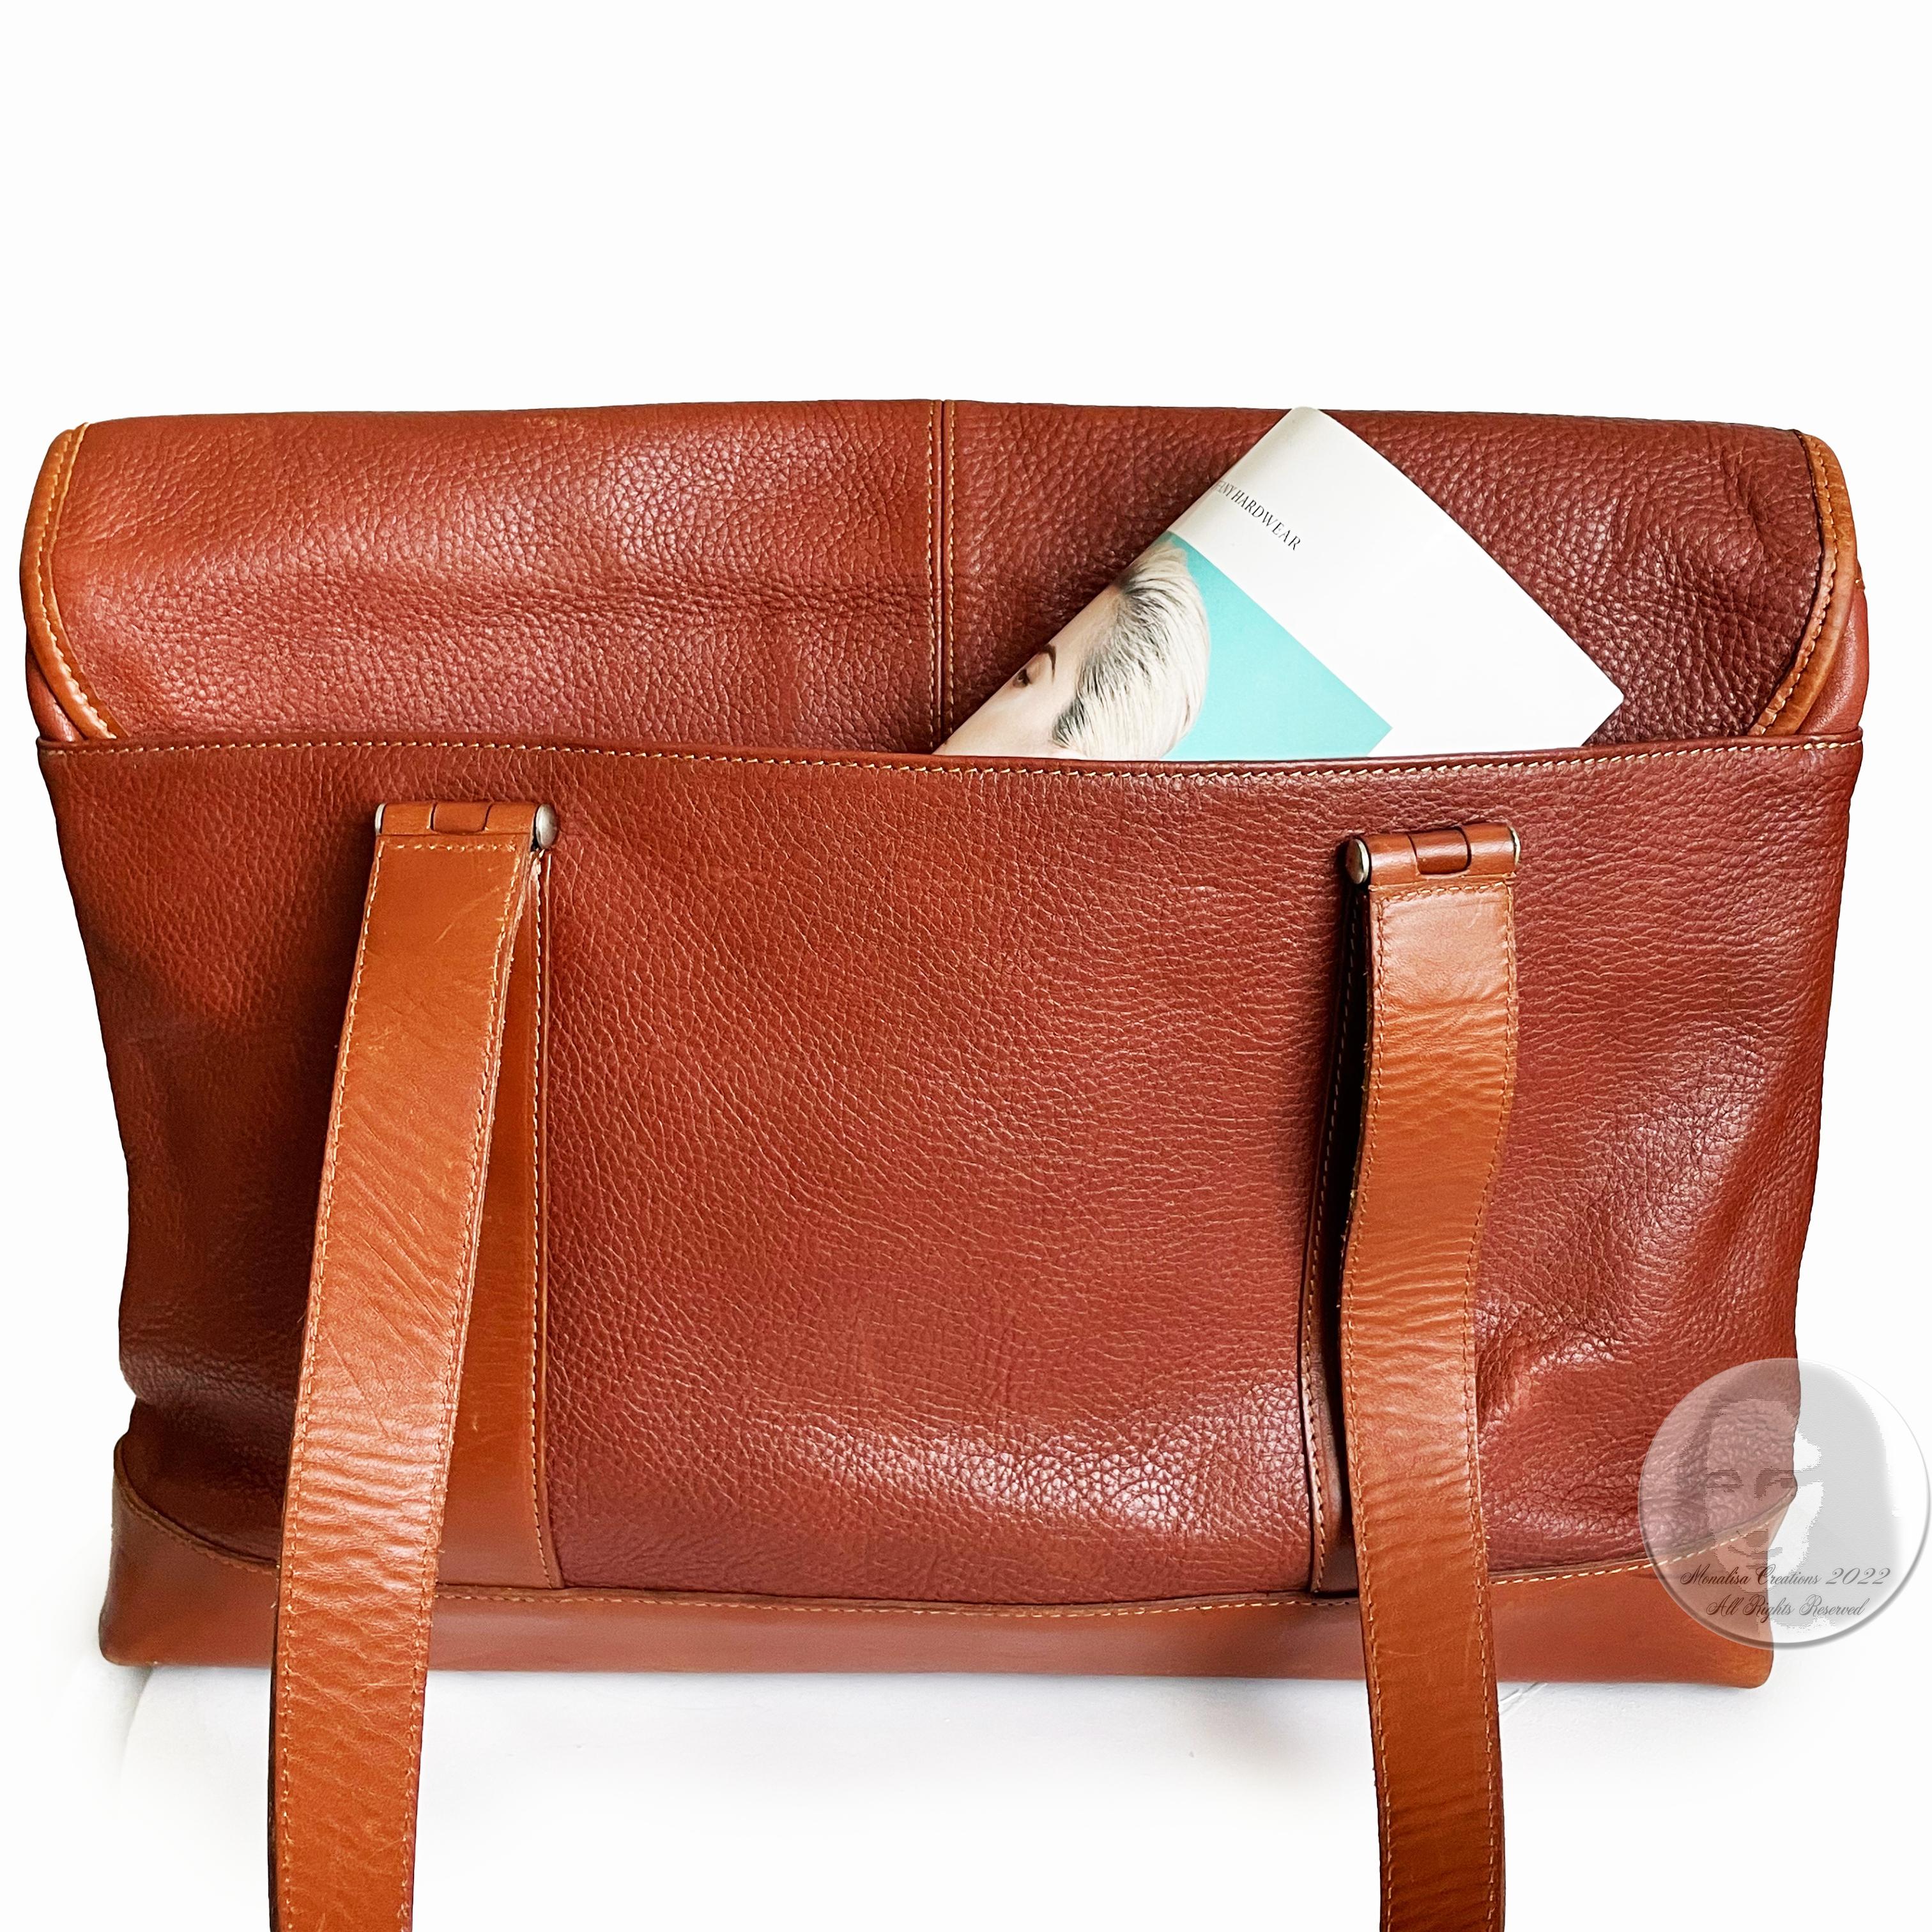 Hartmann Business Bag Briefcase Computer or Shoulder Bag British Tan Leather 3